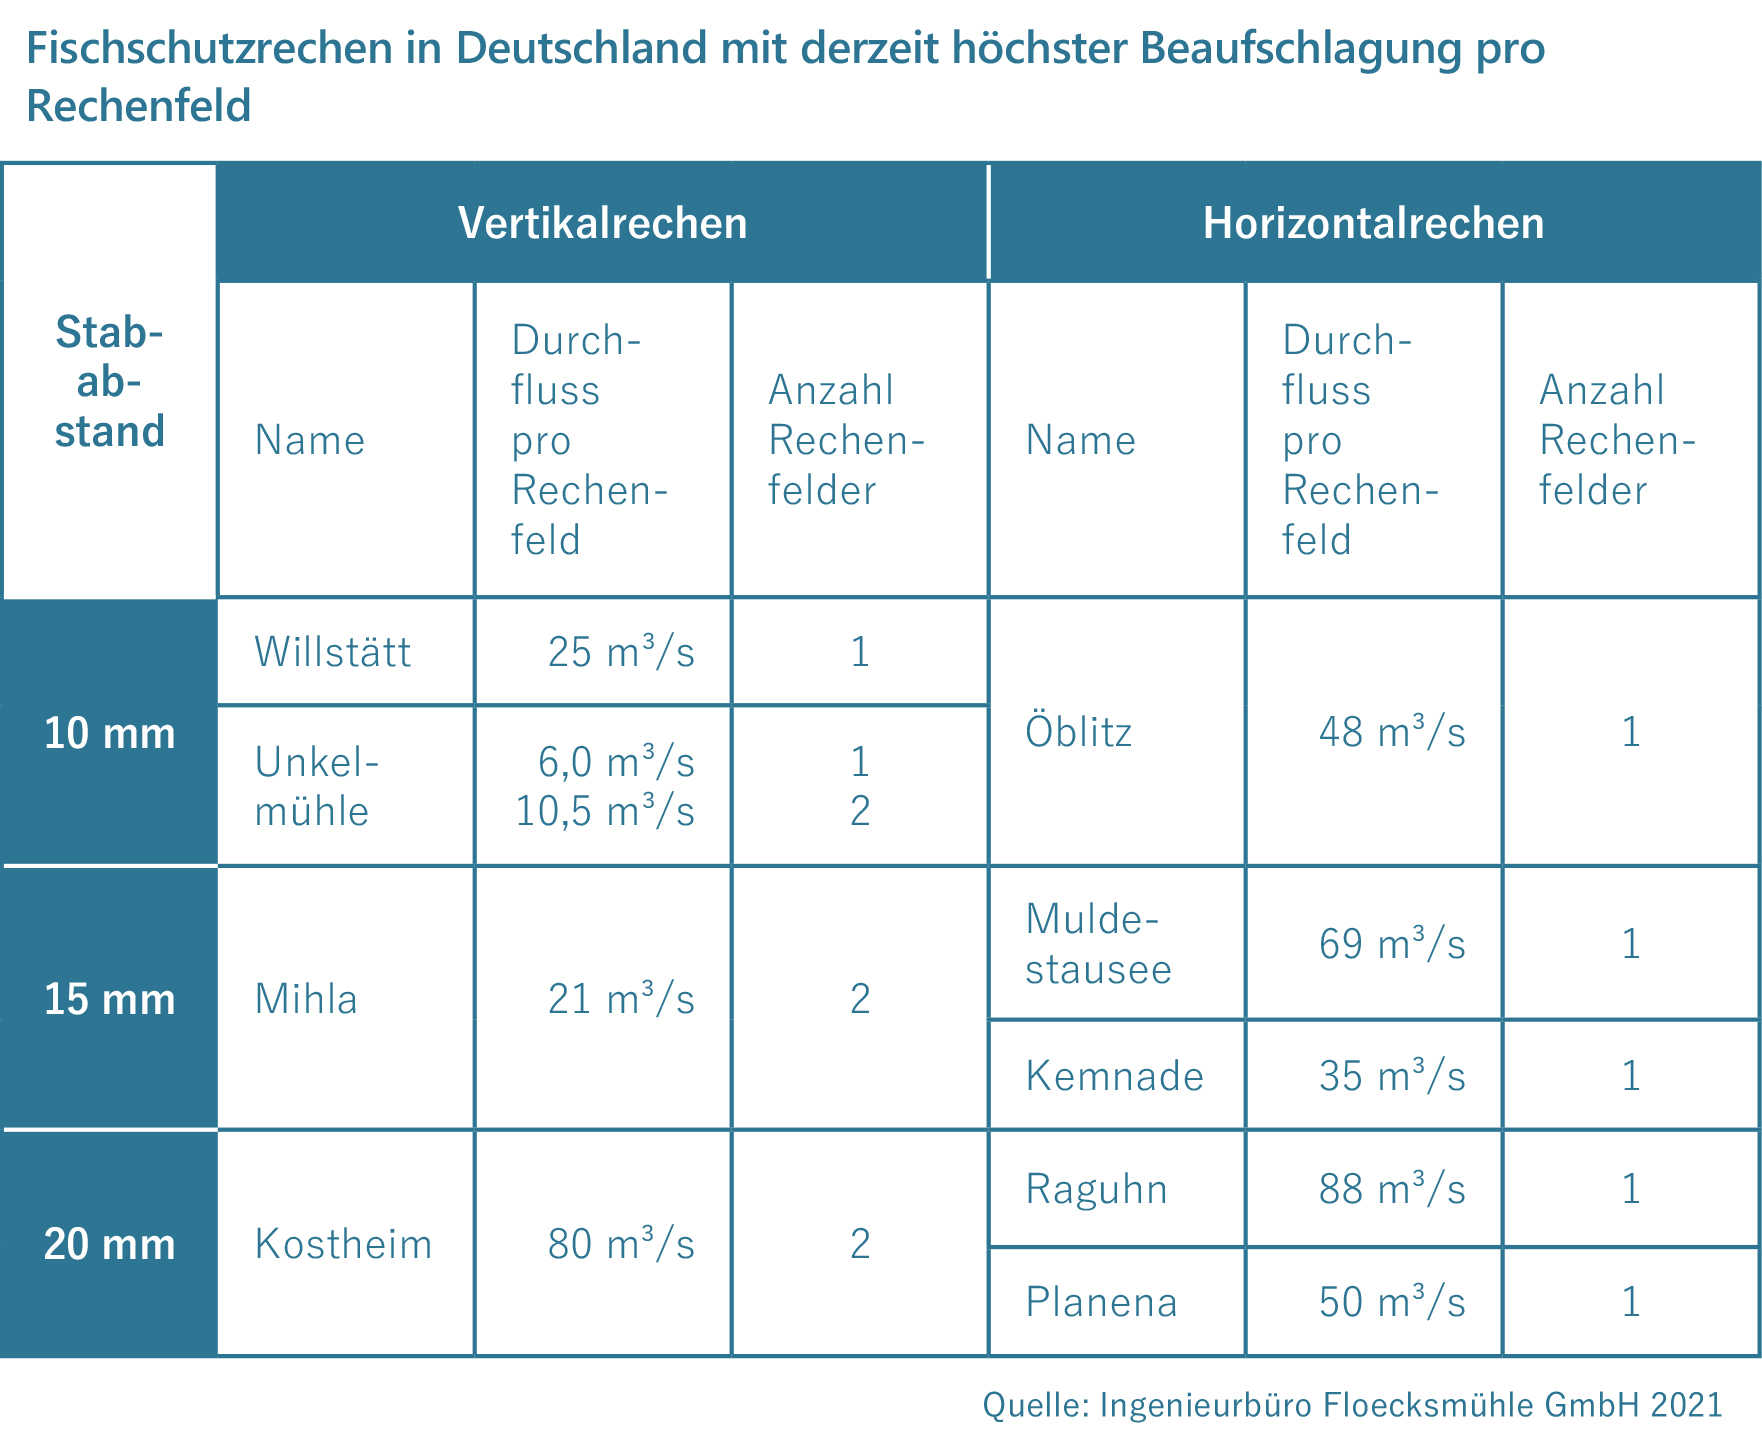 Fischschutzrechen in Deutschland mit derzeit höchster Beaufschlagung pro Rechenfeld